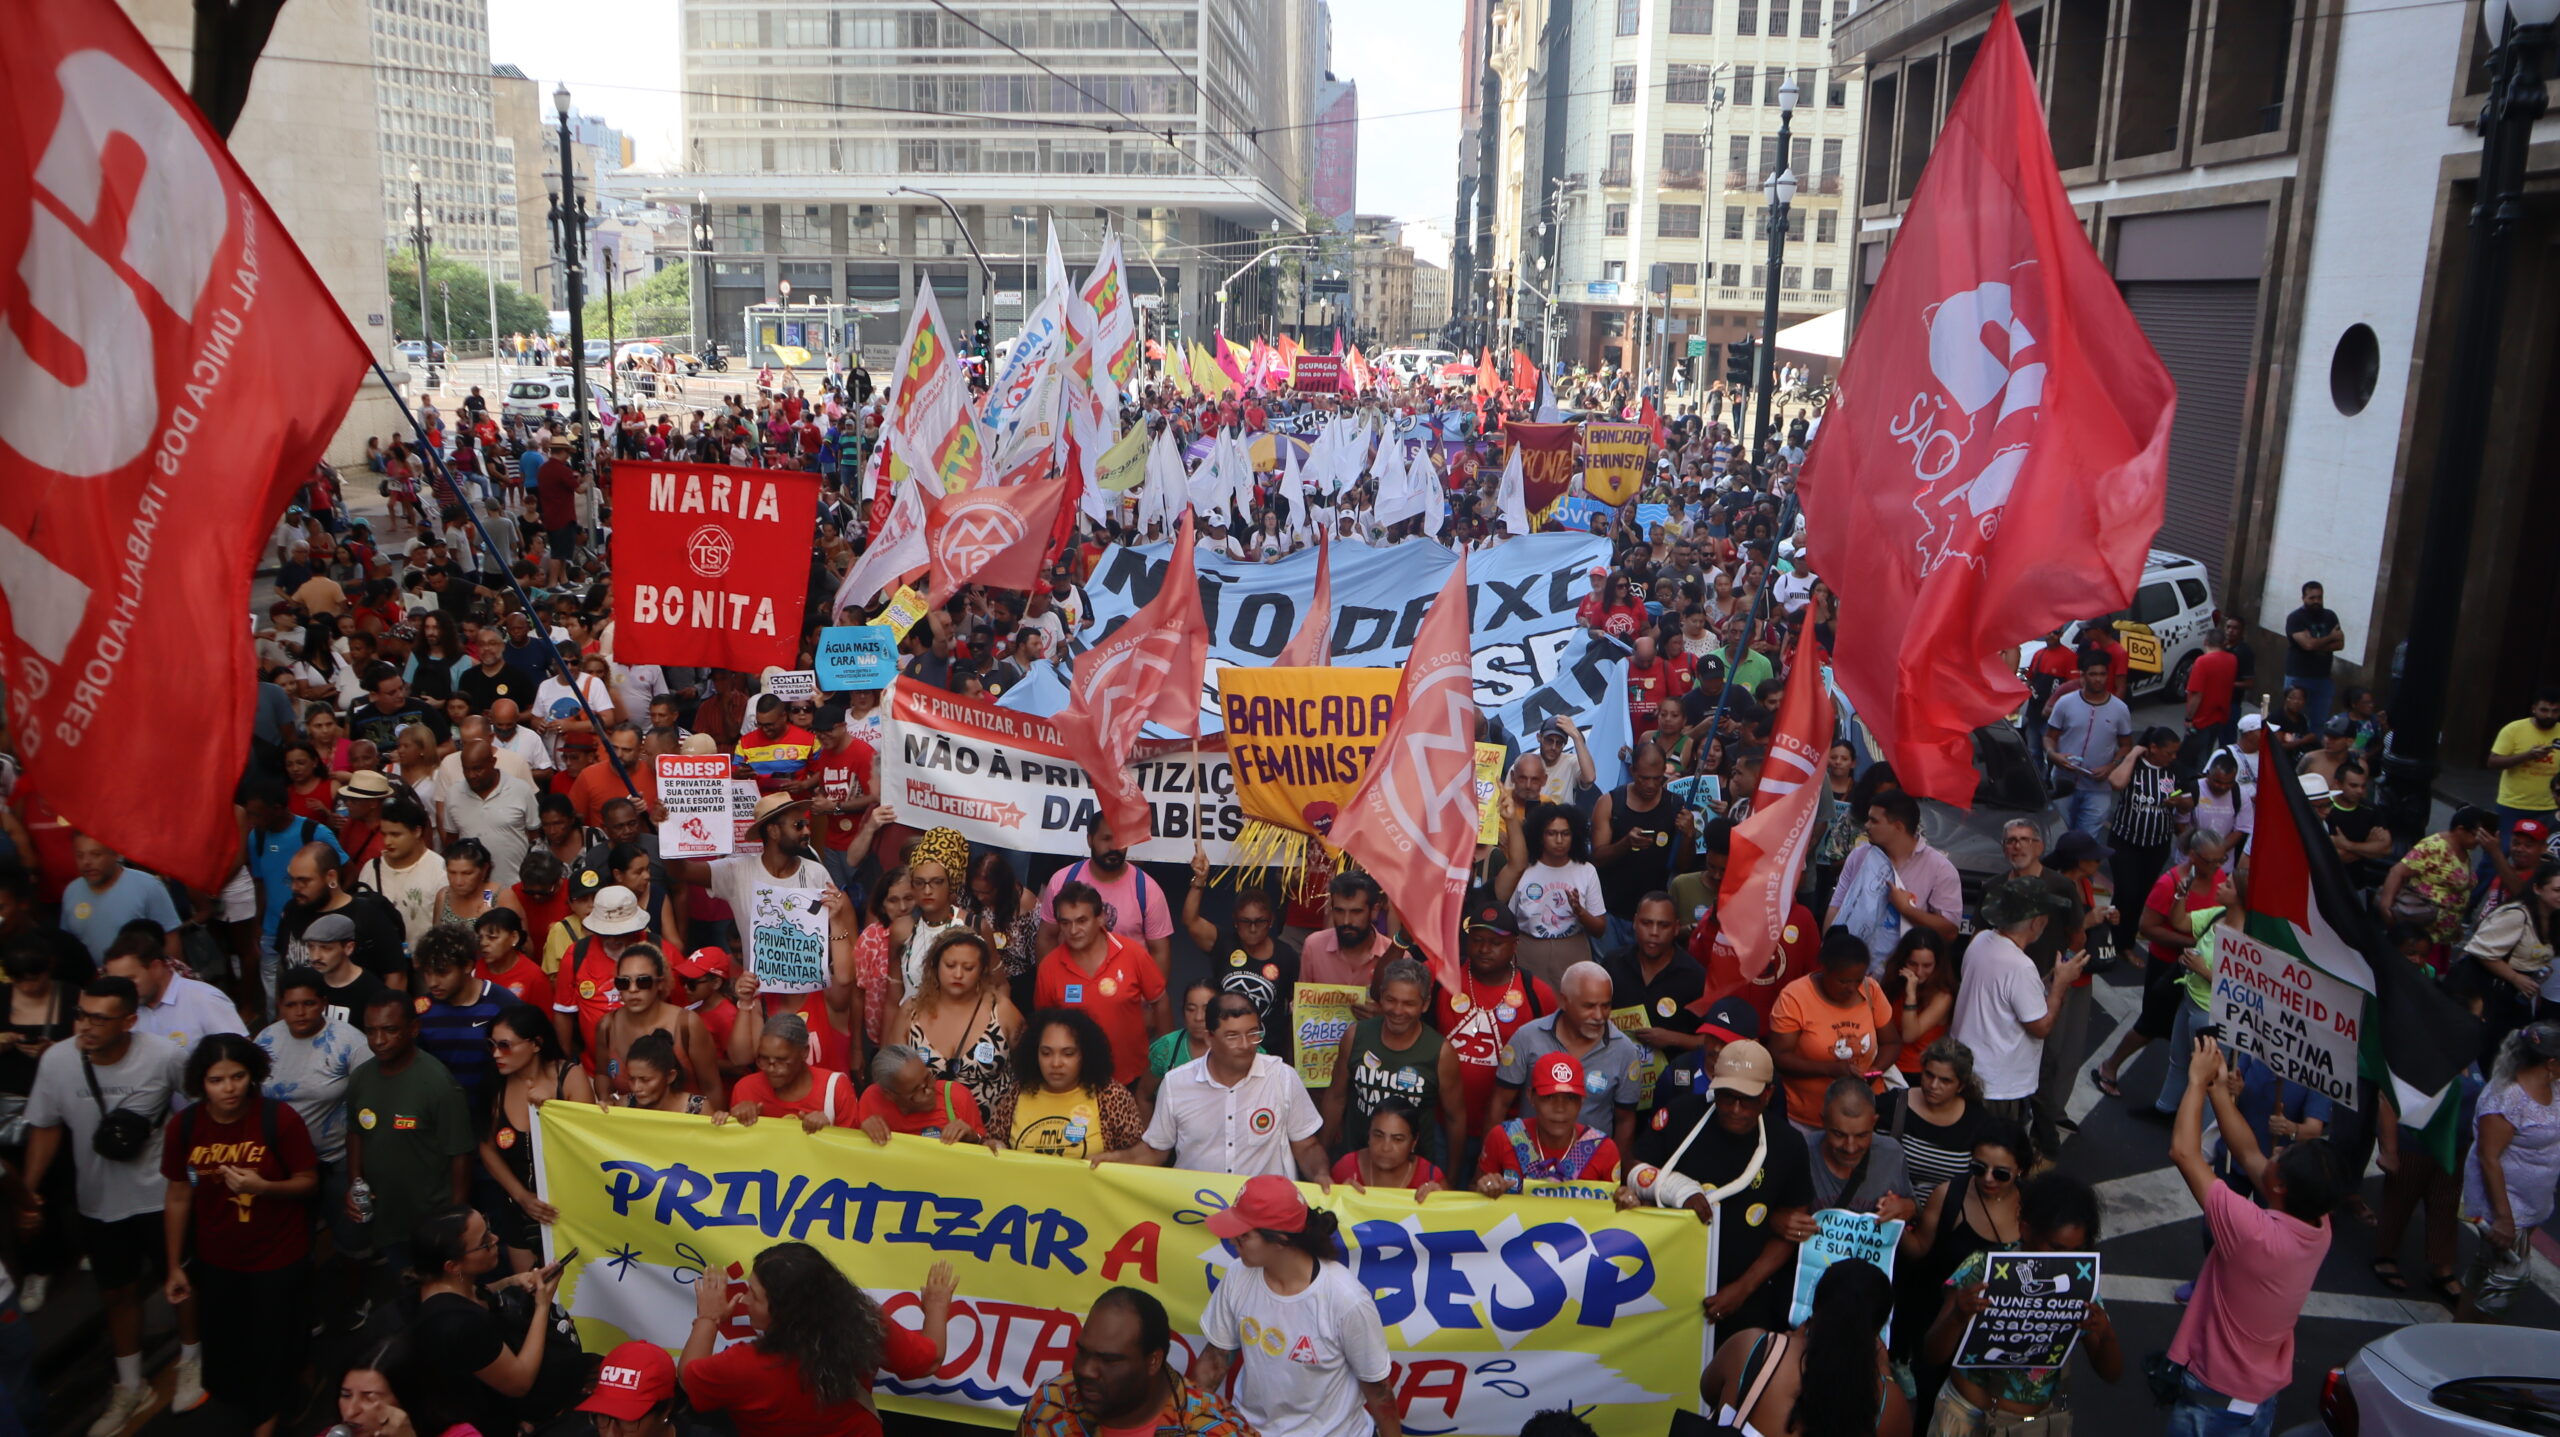 População marcha contra a privatização e reúne 5 mil em defesa da Sabesp